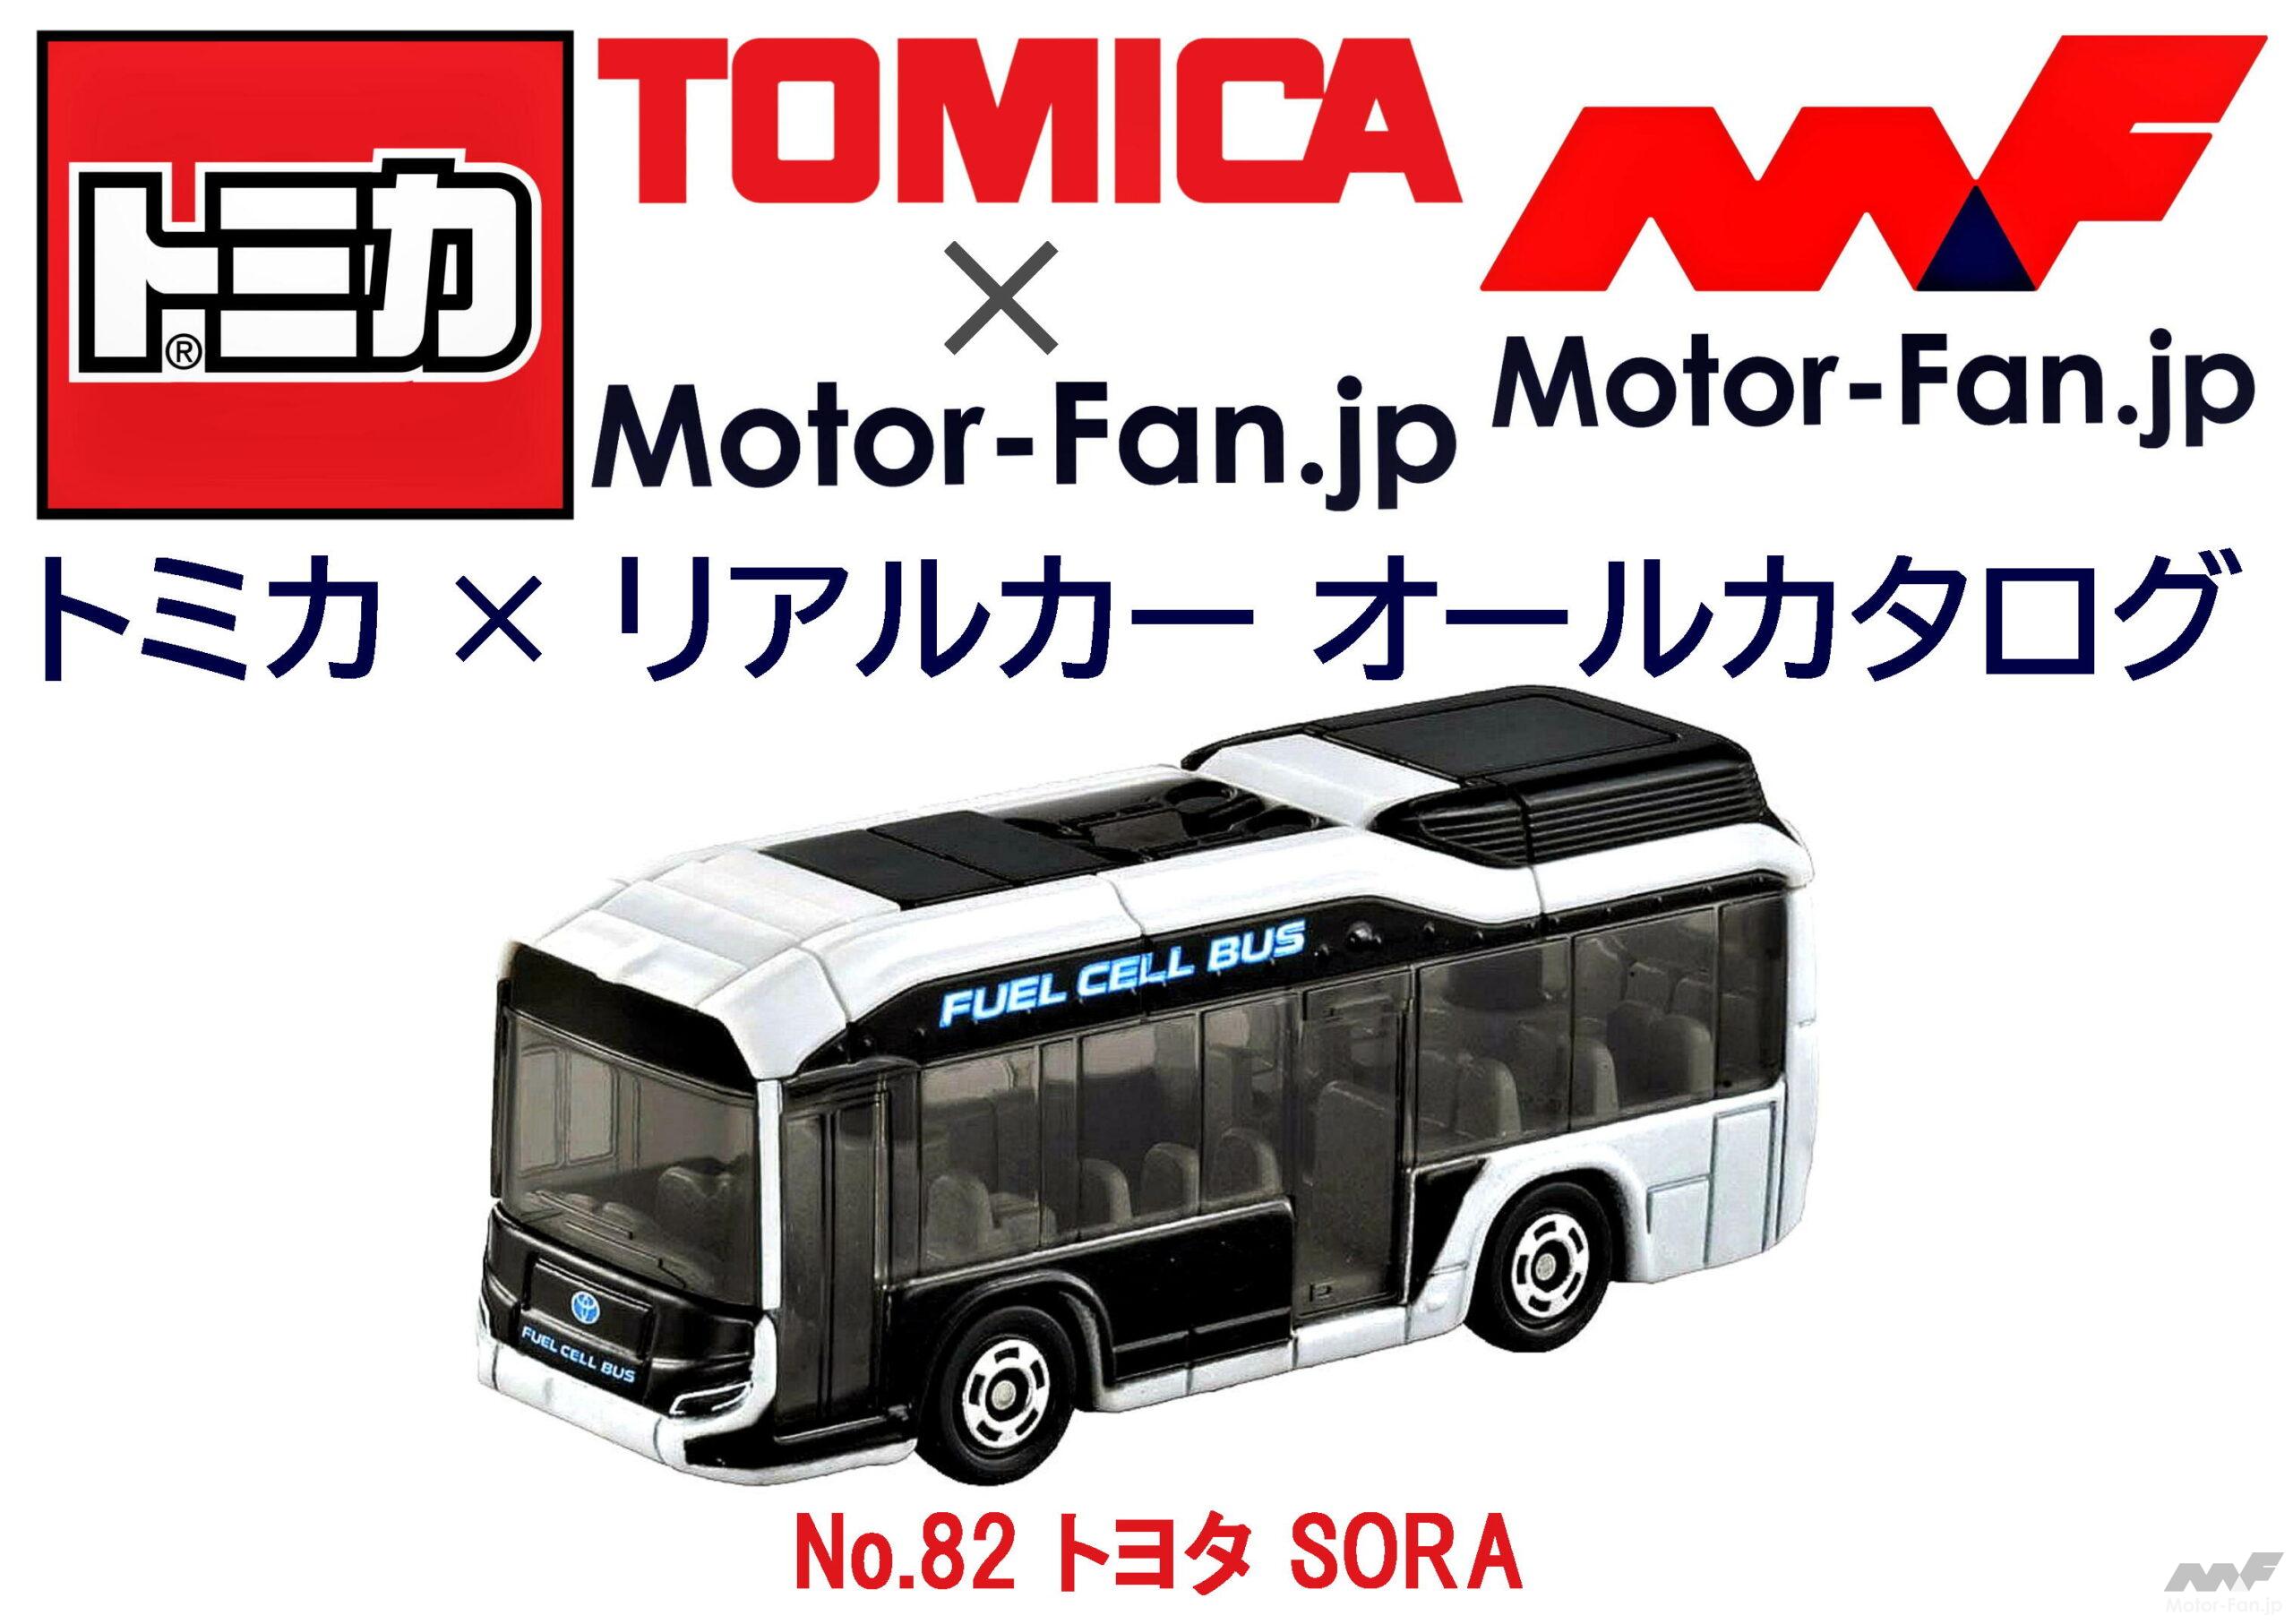 トヨタ自動車水素バス SORA パンフレットとクリアファイルトラック ...